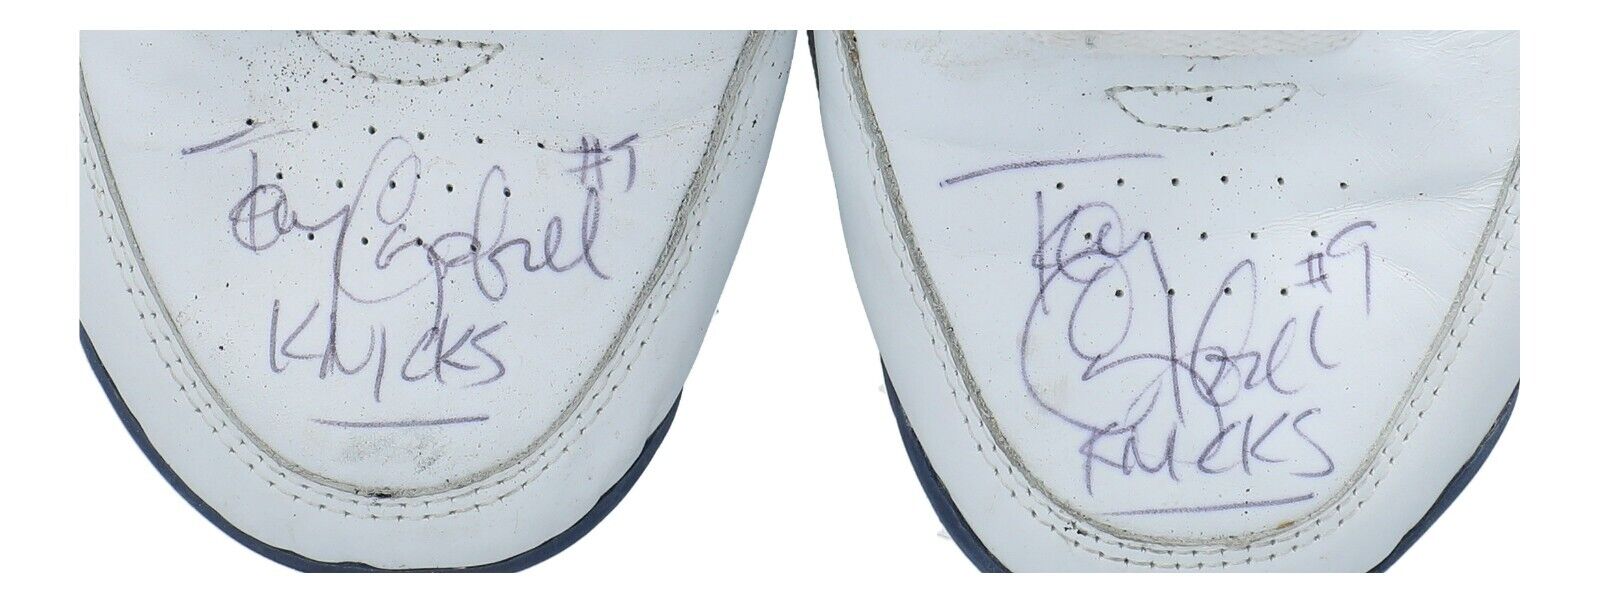 1992-93 Tony Campbell Game-Used Signed Fila Sneakers NY Knicks JSA & MEARS COA